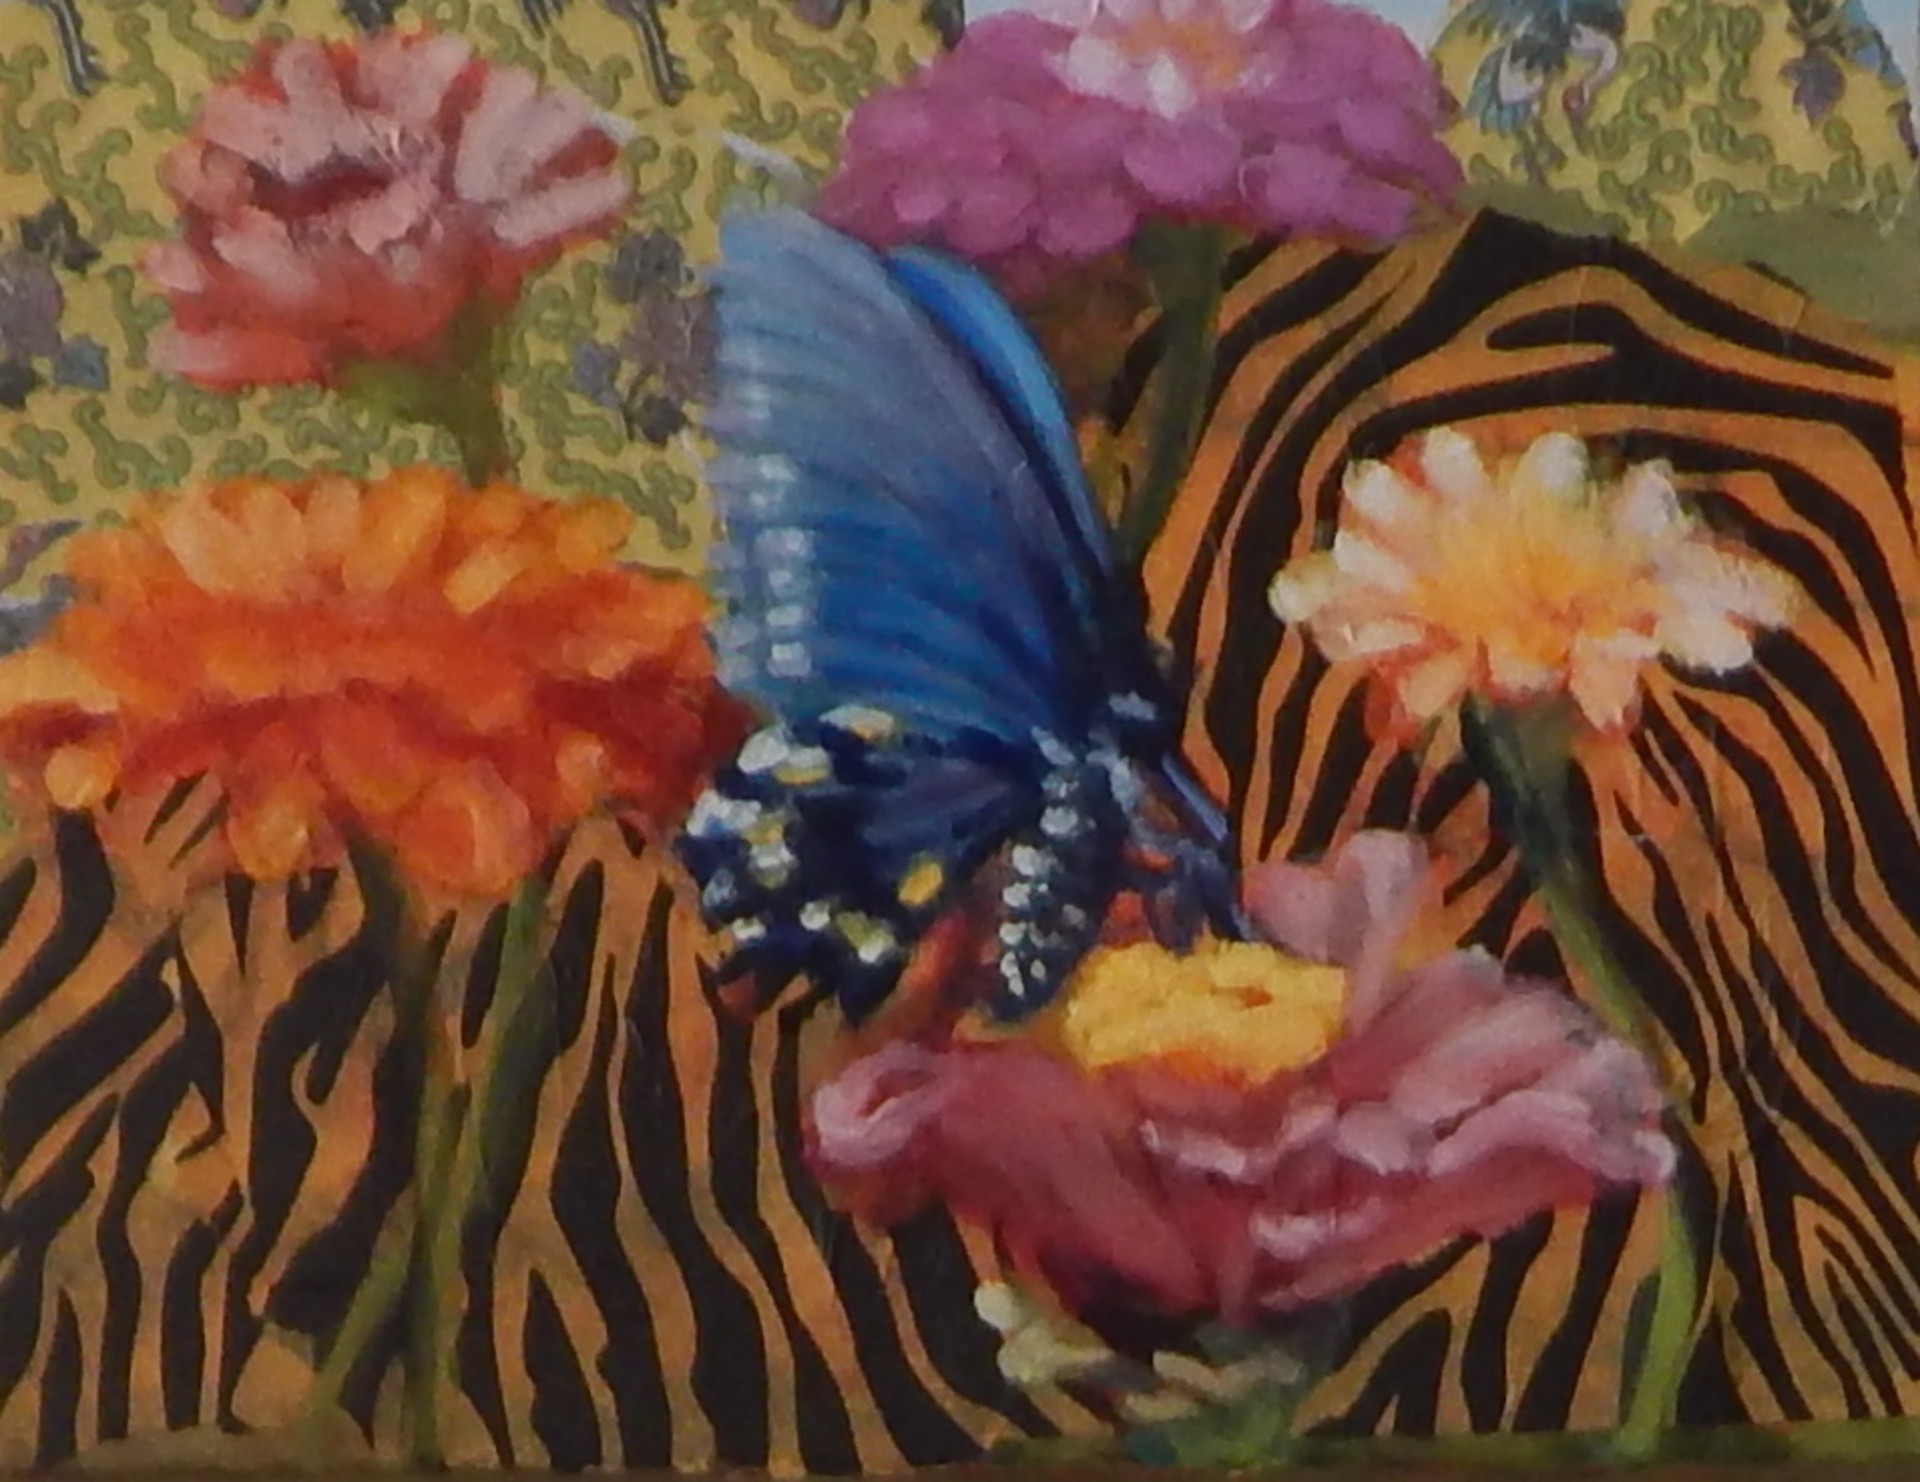 Butterfly among Zinnias by Ann B. Rhodes